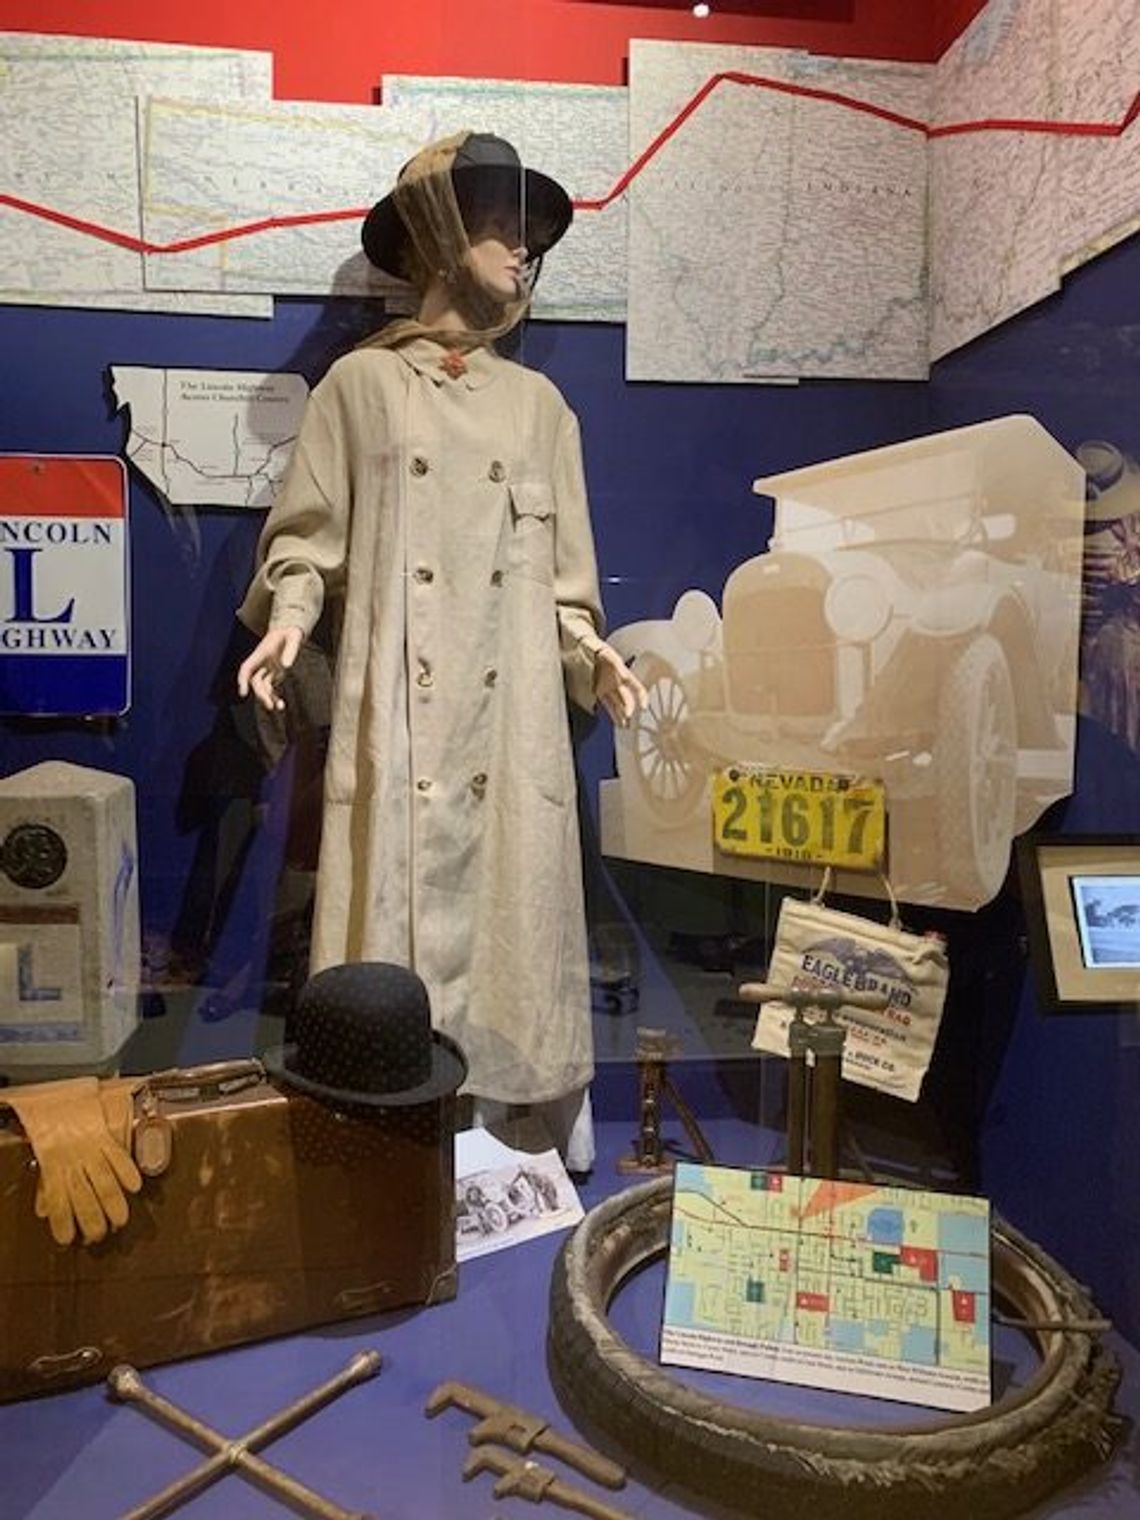 Lincoln Highway Museum Exhibit Opens